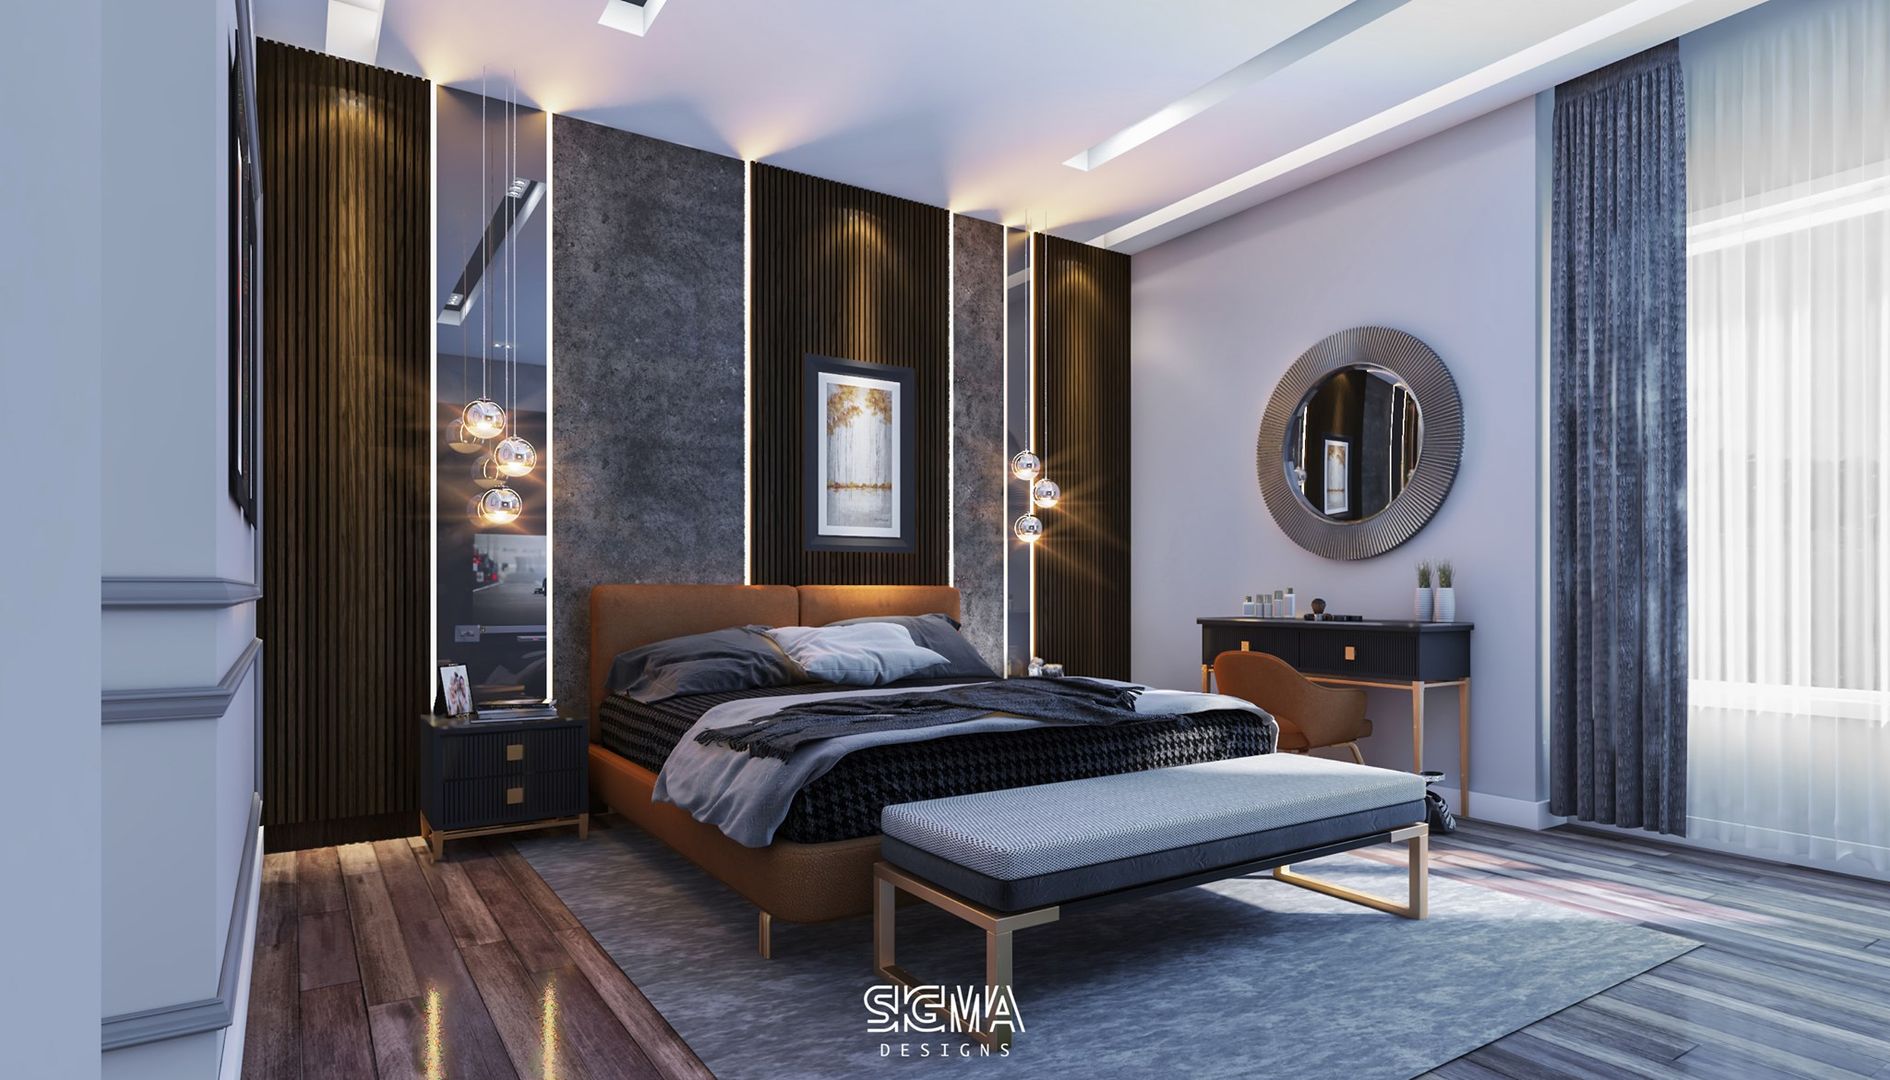 شقة سكنية خاصة - القاهرة الجديدة, SIGMA Designs SIGMA Designs Modern style bedroom